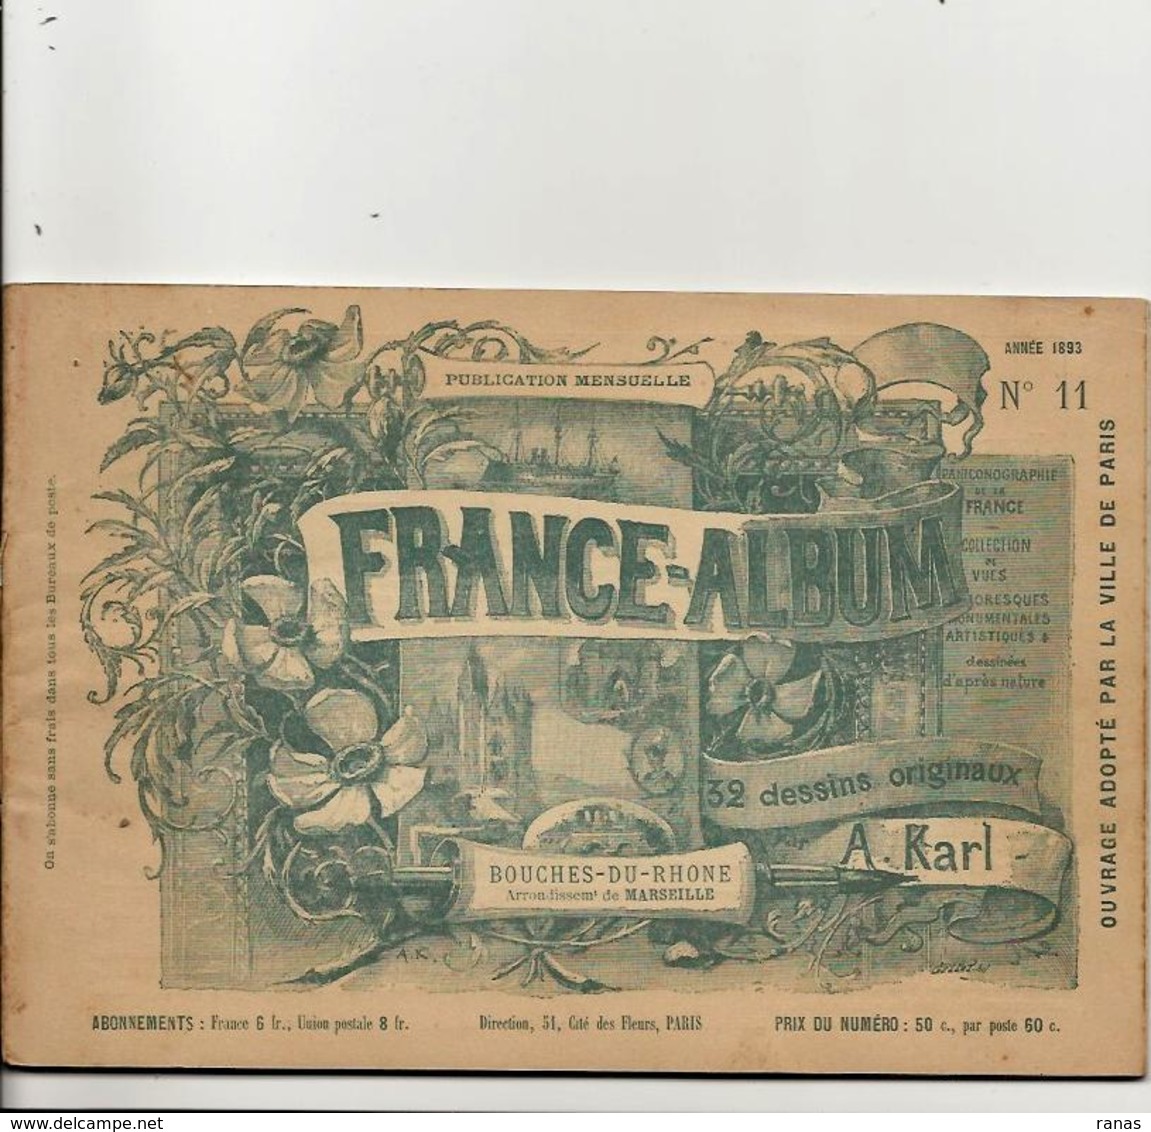 Bouches Du Rhône 13 France Album De A. KARL, Carte Gravures Texte Publicités 1893 - Tourism Brochures